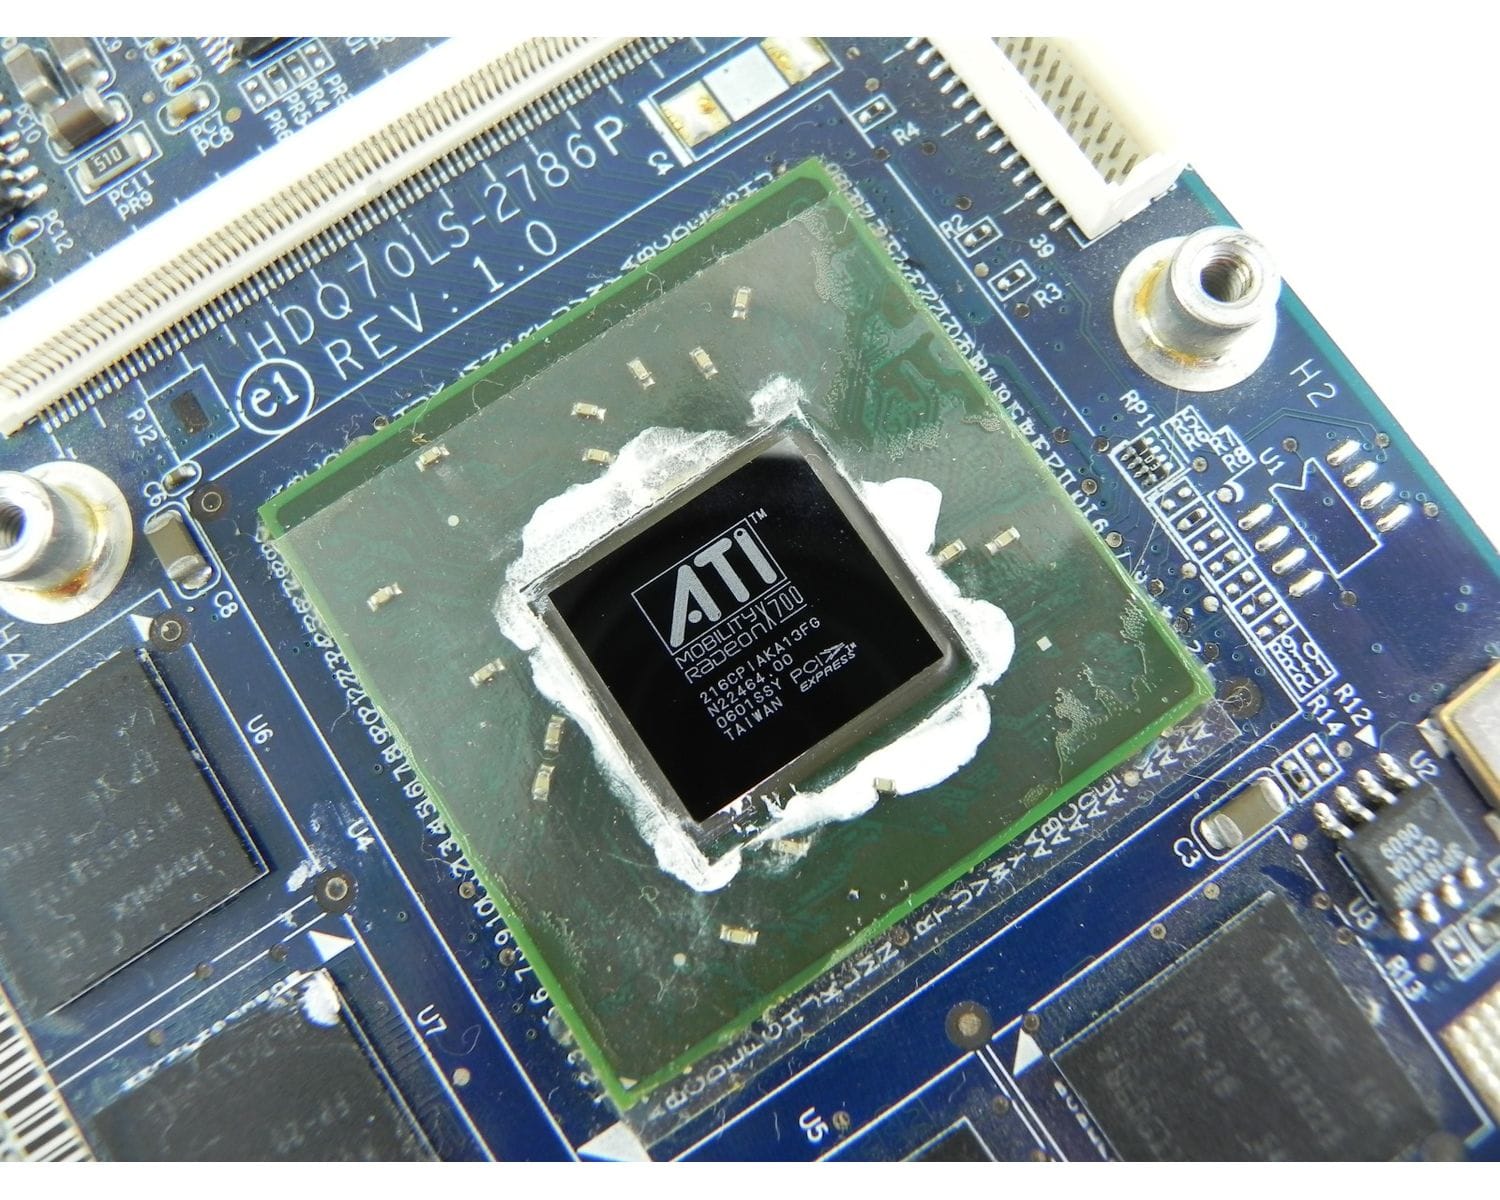 Ati mobility radeon купить. AMD Mobility Radeon x700. ATI Mobility Radeon x200.